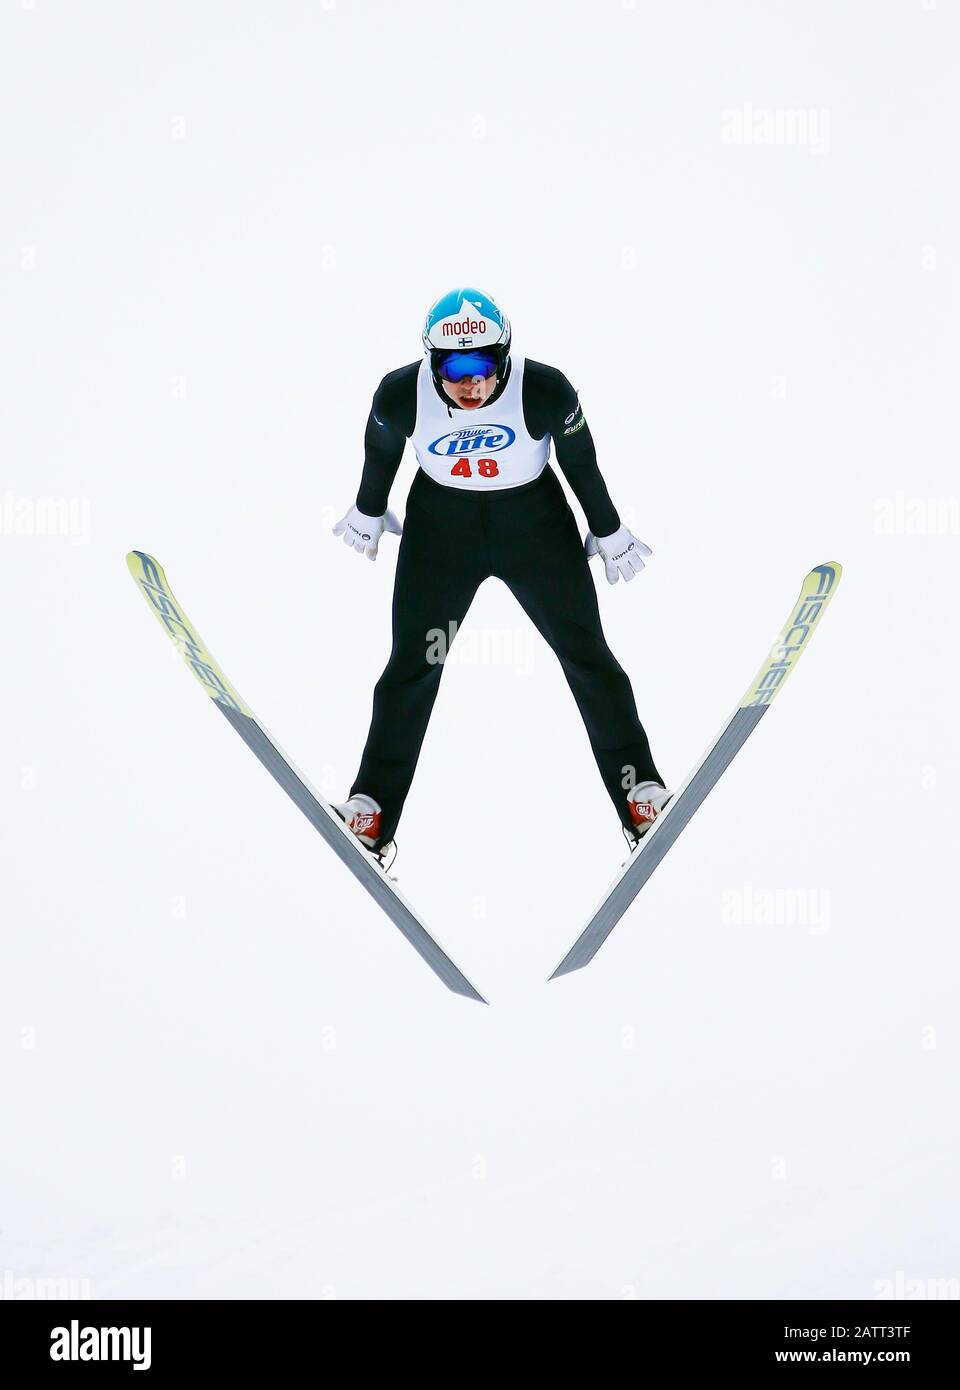 Niko Loytainen de Finlandia salto de esquí en una colina de 70 metros. Foto de stock